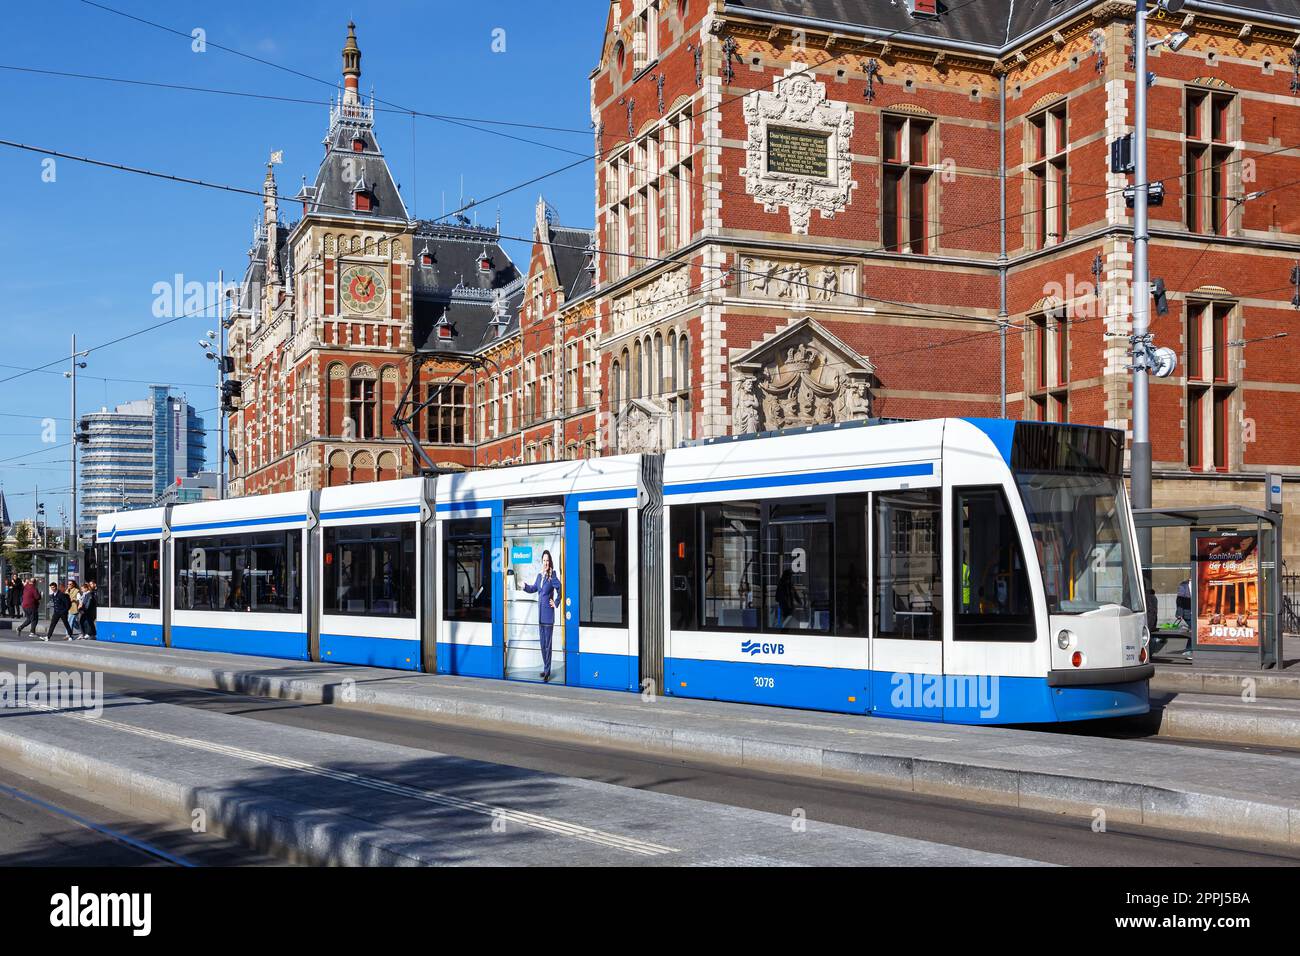 Tram Siemens Combino, trasporto pubblico in metropolitana leggera presso la stazione centrale di Amsterdam, Paesi Bassi Foto Stock